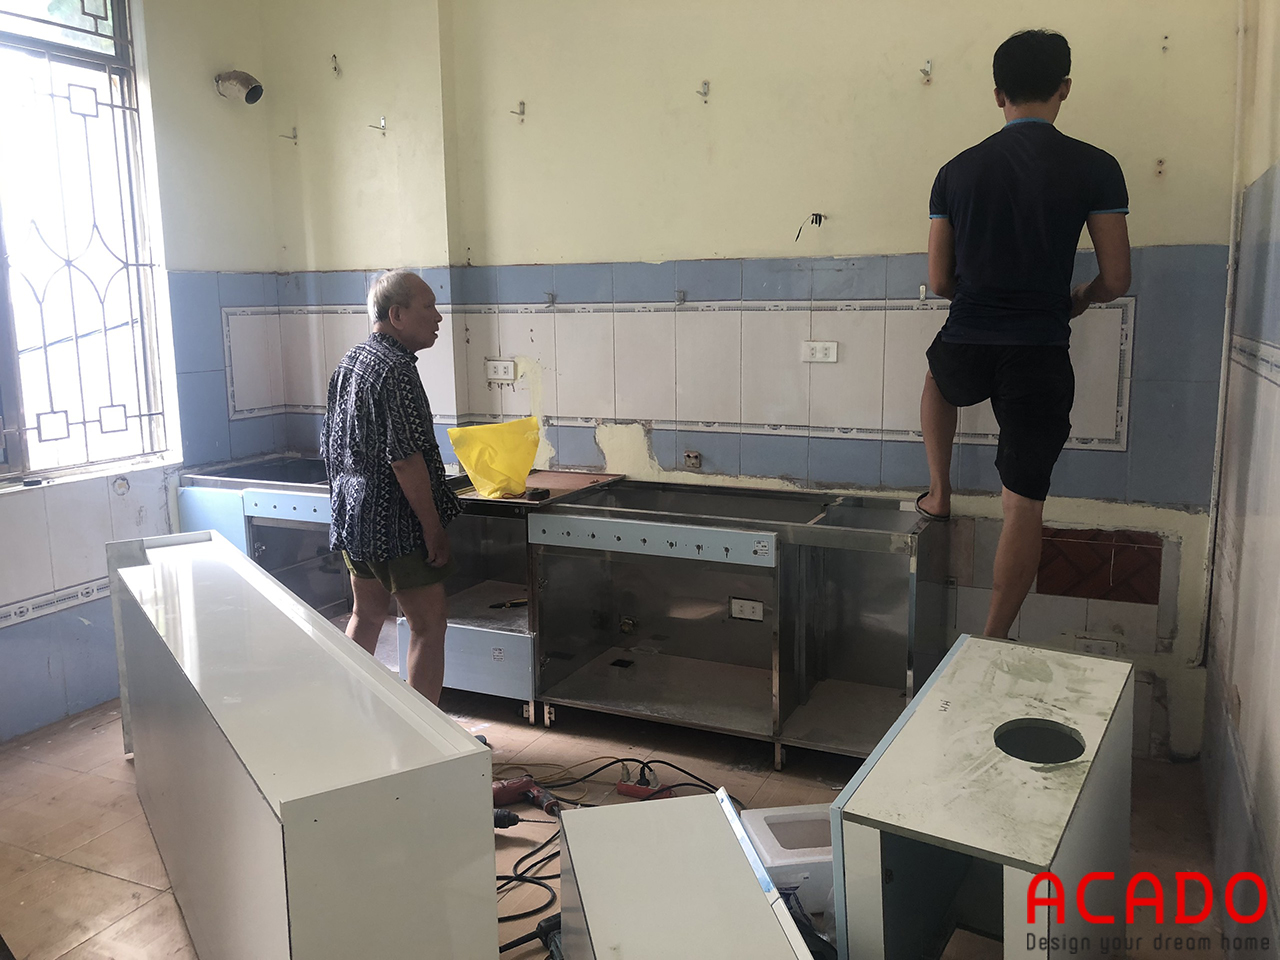 Thợ thi công ACADO bắt đầu tiến hành lắp đặt tủ bếp